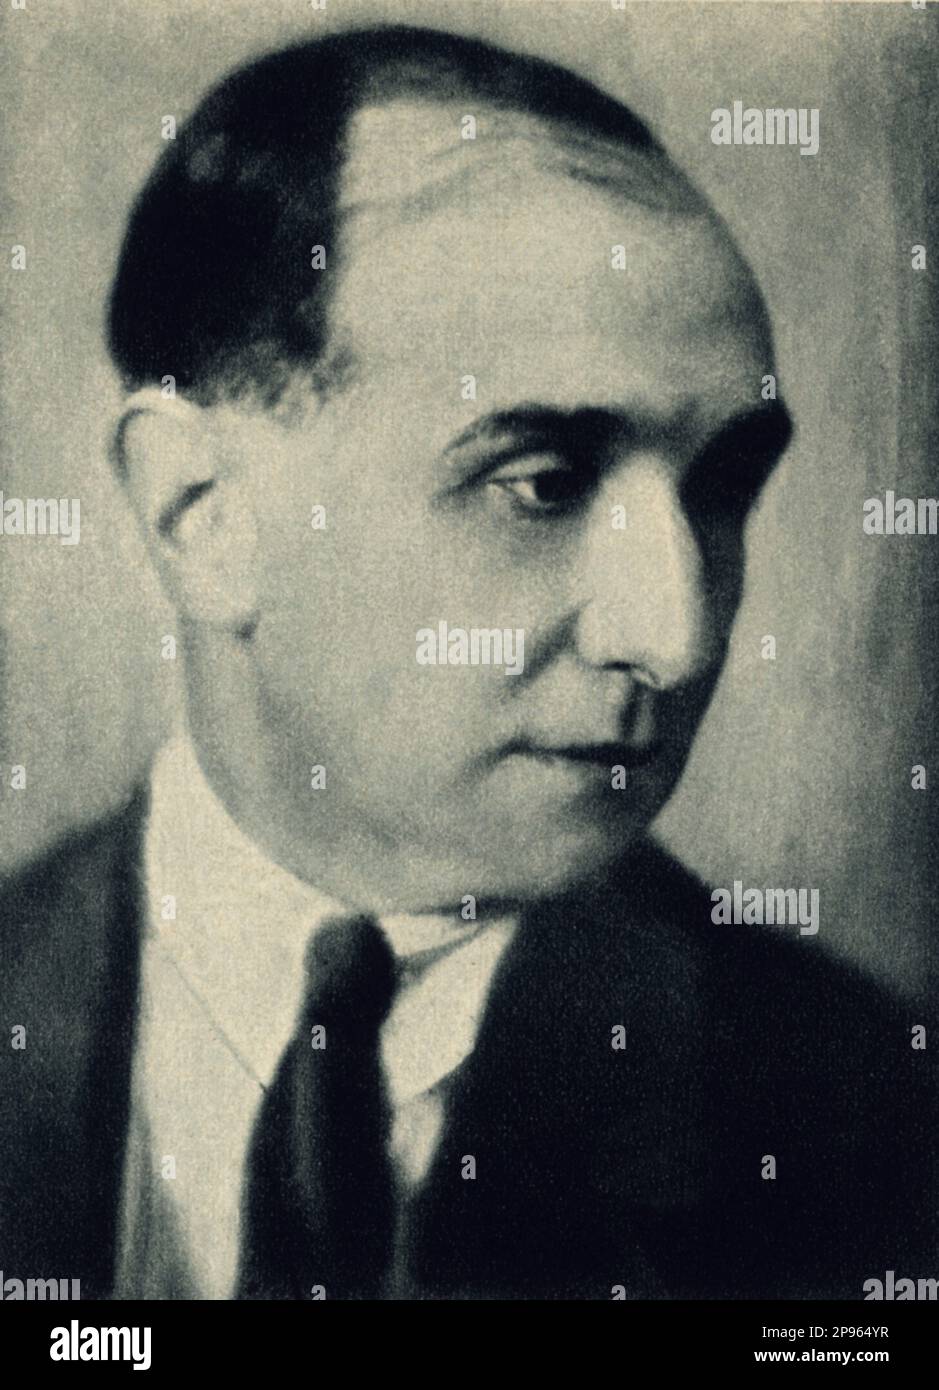 1928 , ITALIA : sceneggiatore italiano , drammaturgo , poeta e reviver FAUSTO MARIA Martini ( 1886 - 1931 ). - LETTERATO - SCRITTORE - LETTERATURA - LETTERATURA - drammaturgo - TEATRO - TEATRO - TEATRO - TEATRO - POESIA - POETA - POESIA - commediografo - ritratto - ritrato ---- Archivio GBB Foto Stock